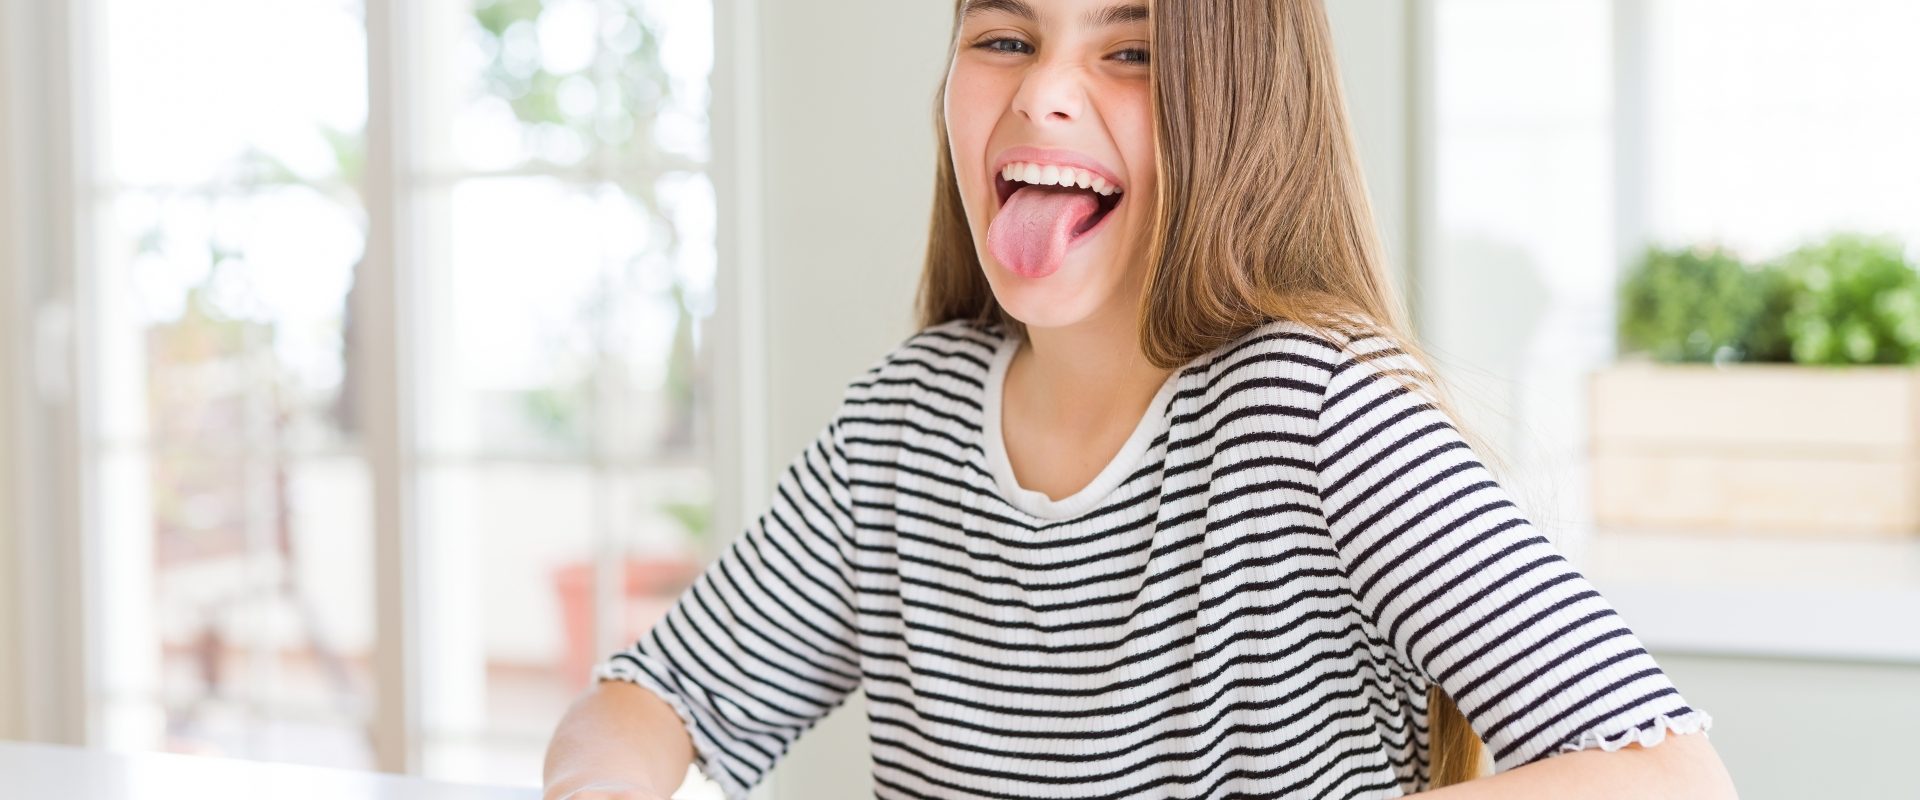 Zmiany na języku - o czym świadczy wygląd języka? Młoda dziewczyna w koszulce w paski siedzi przy blacie kuchennym i pokazuje język.